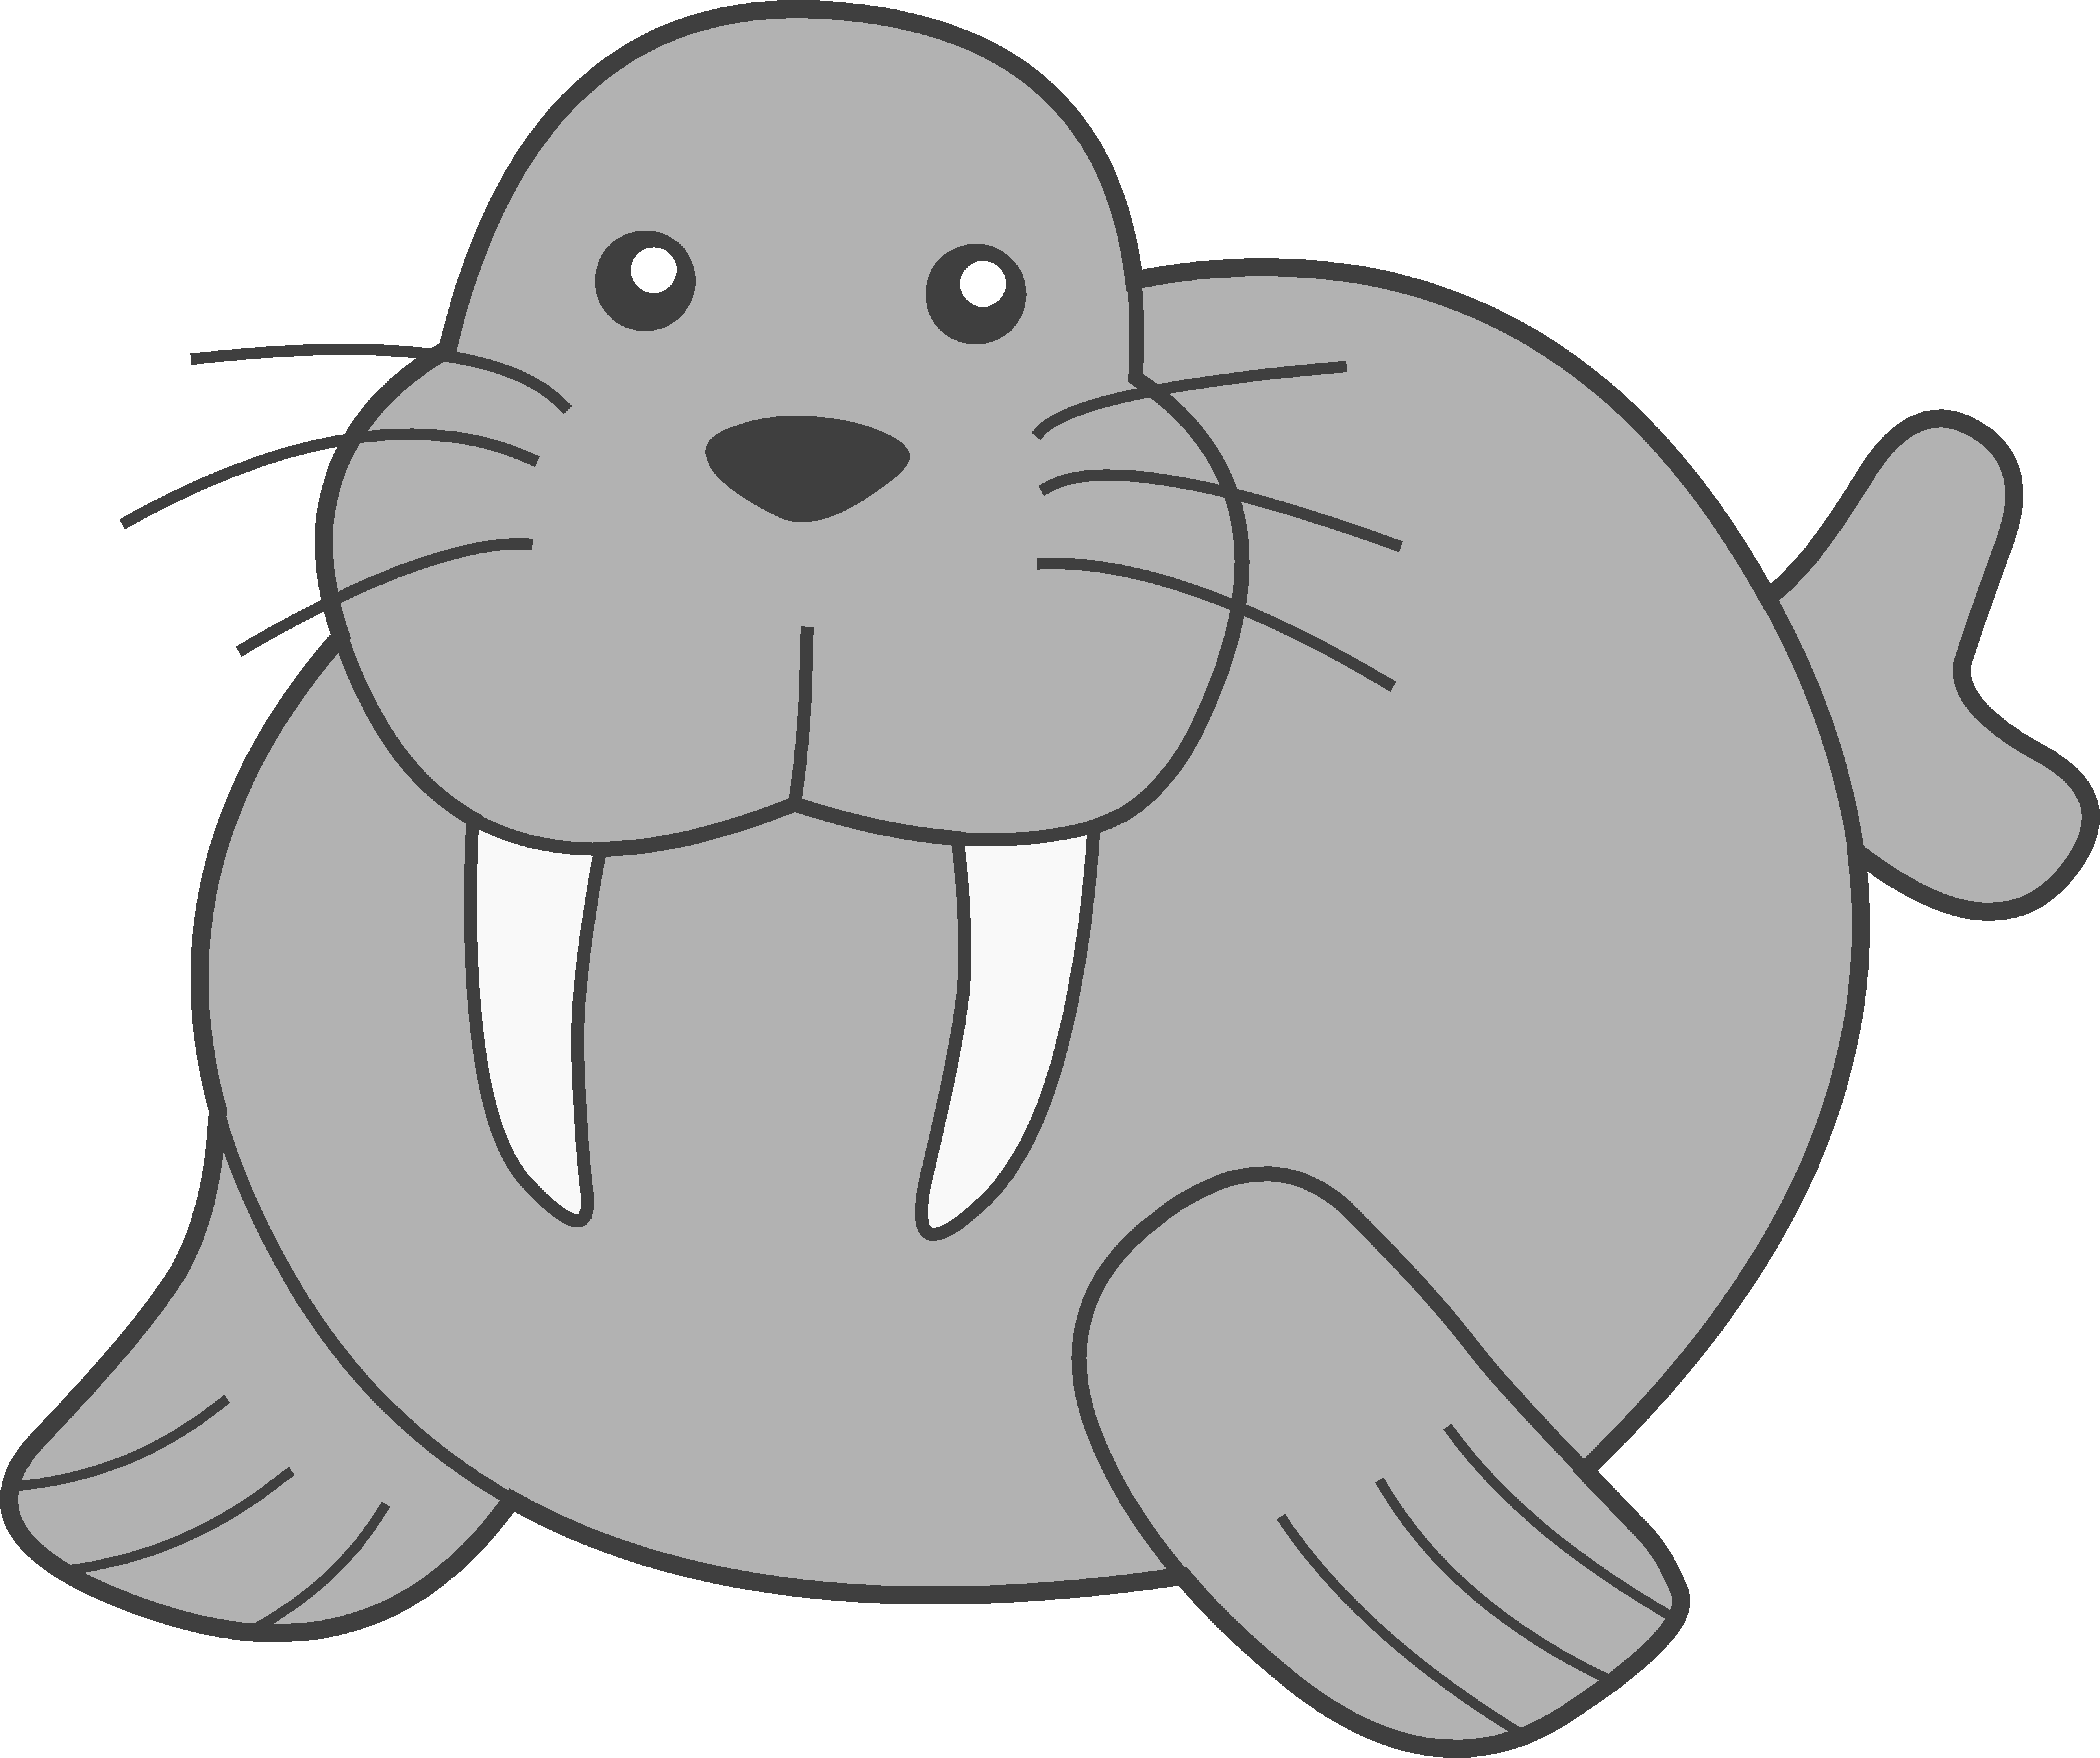 Seal clipart adorable cartoon, Seal adorable cartoon